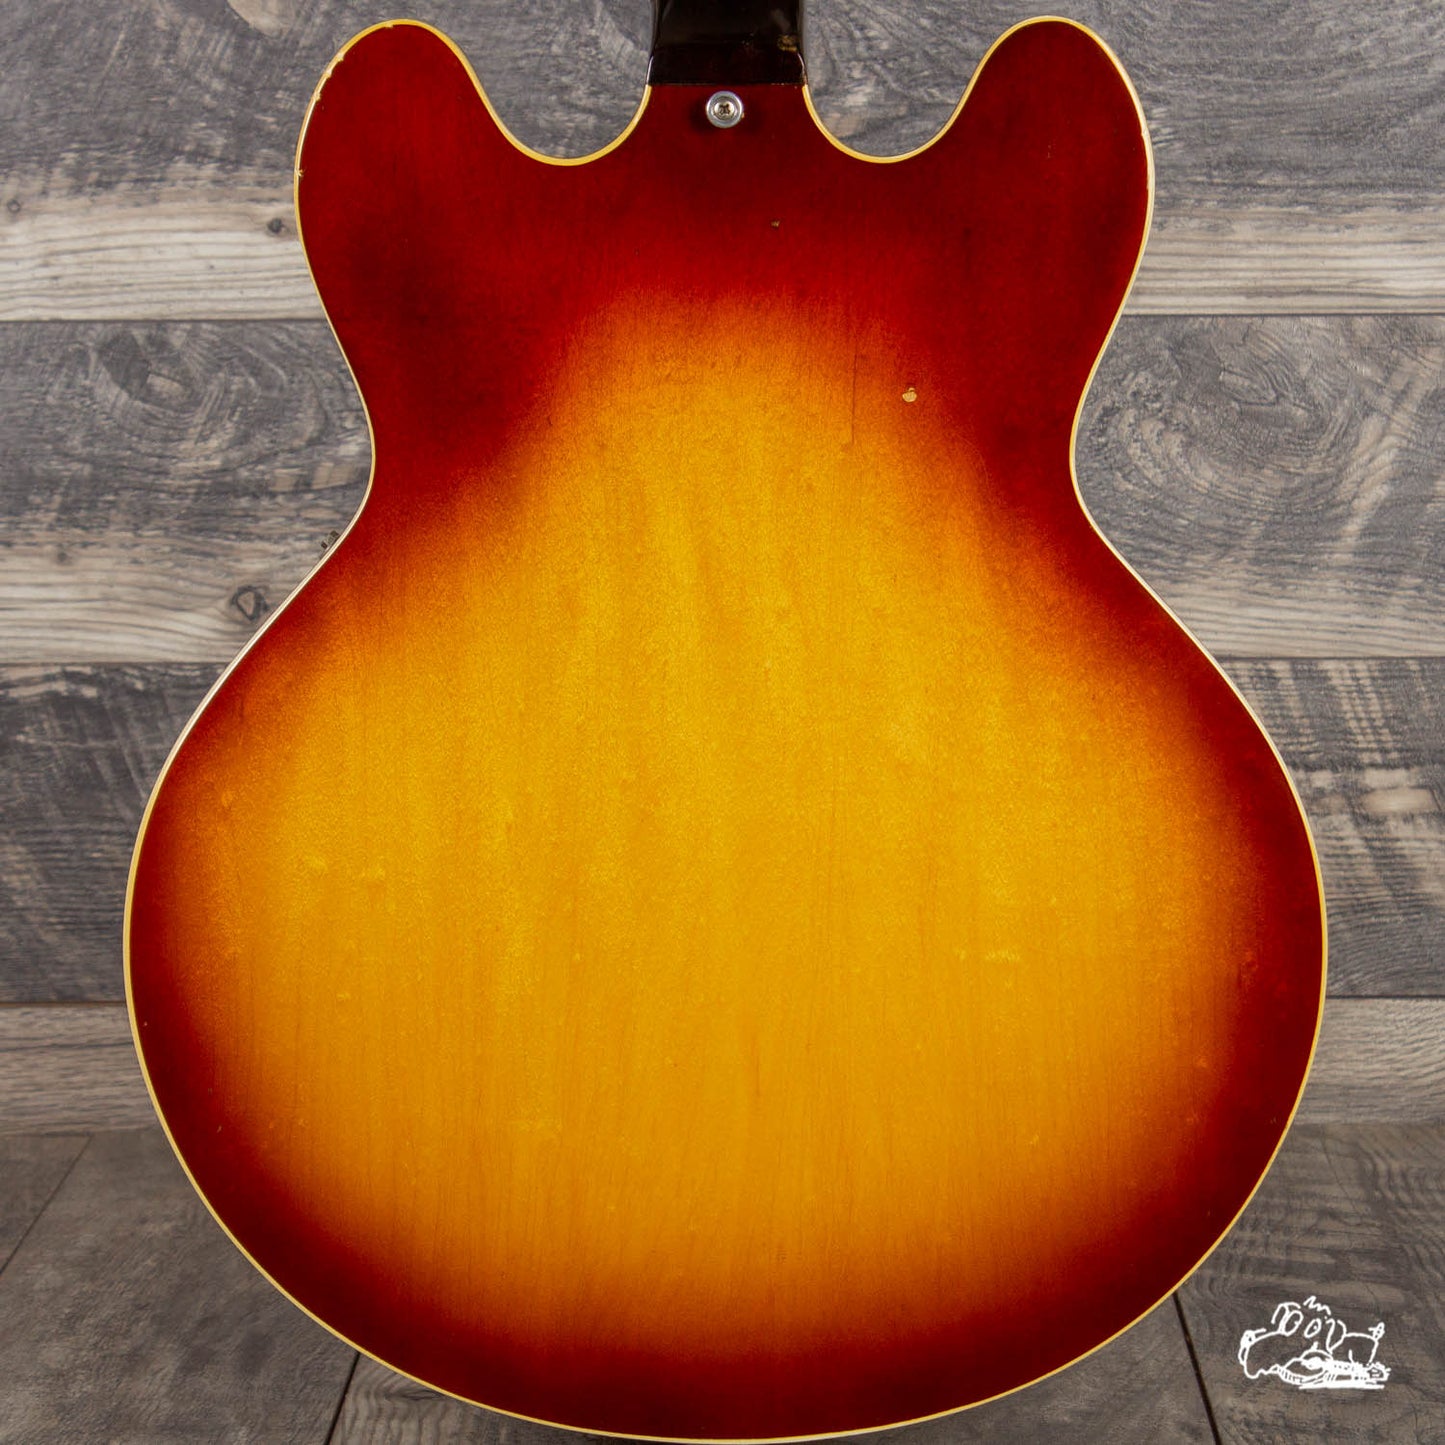 1970 Gibson ES-335